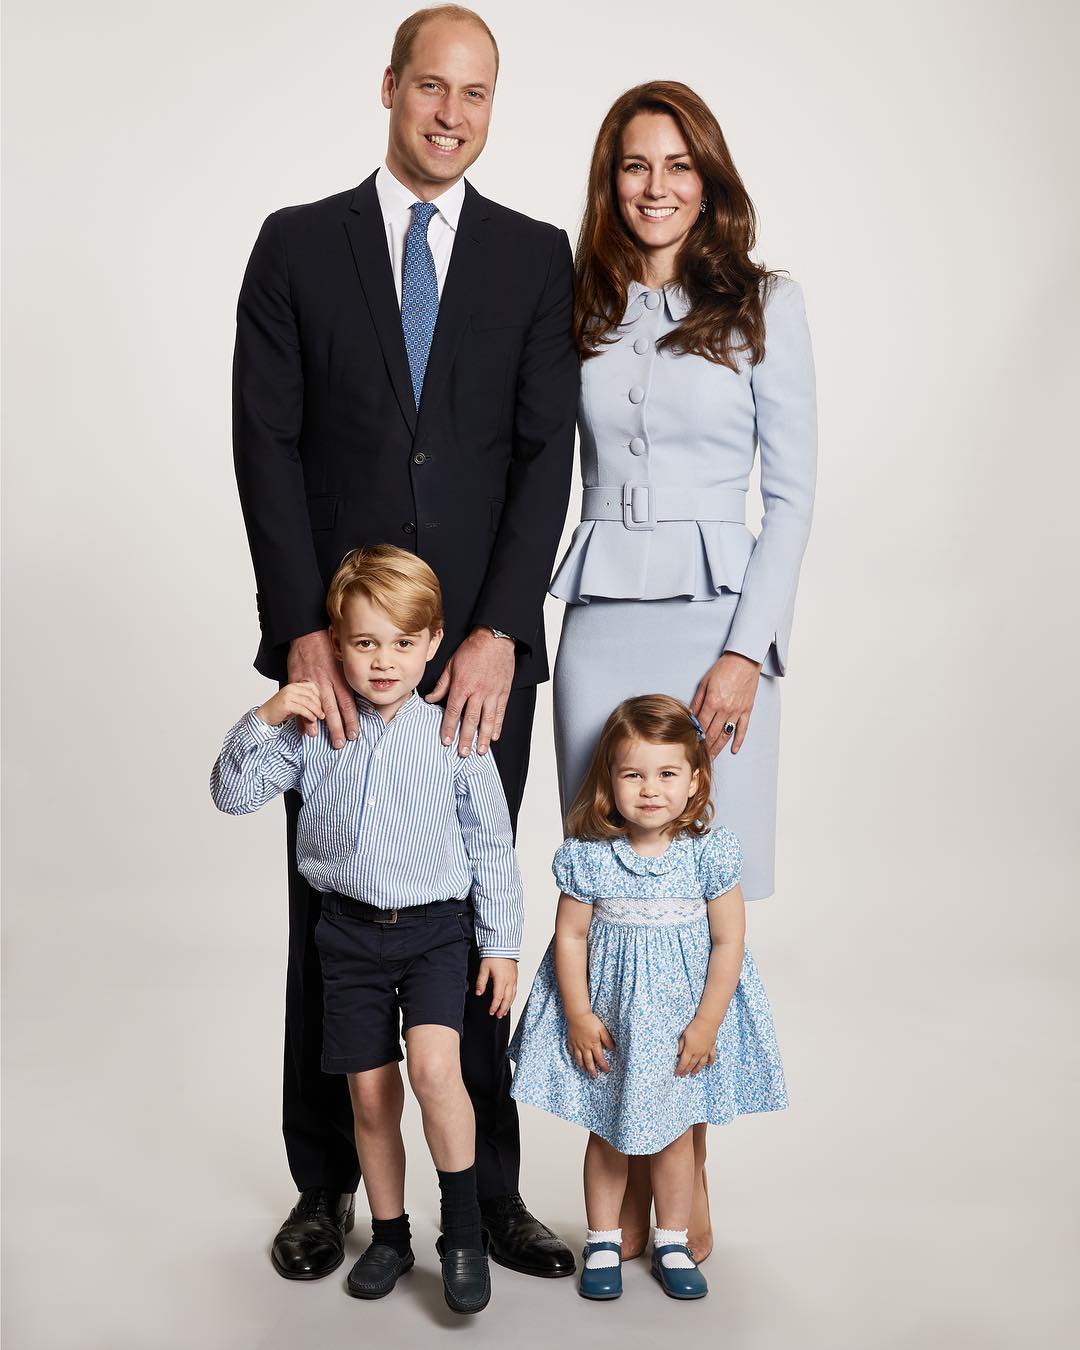 Рождественская открытка принца Уильяма и Кейт Миддлтон с детьми — принцем Джорджем и принцессой Шарлоттой